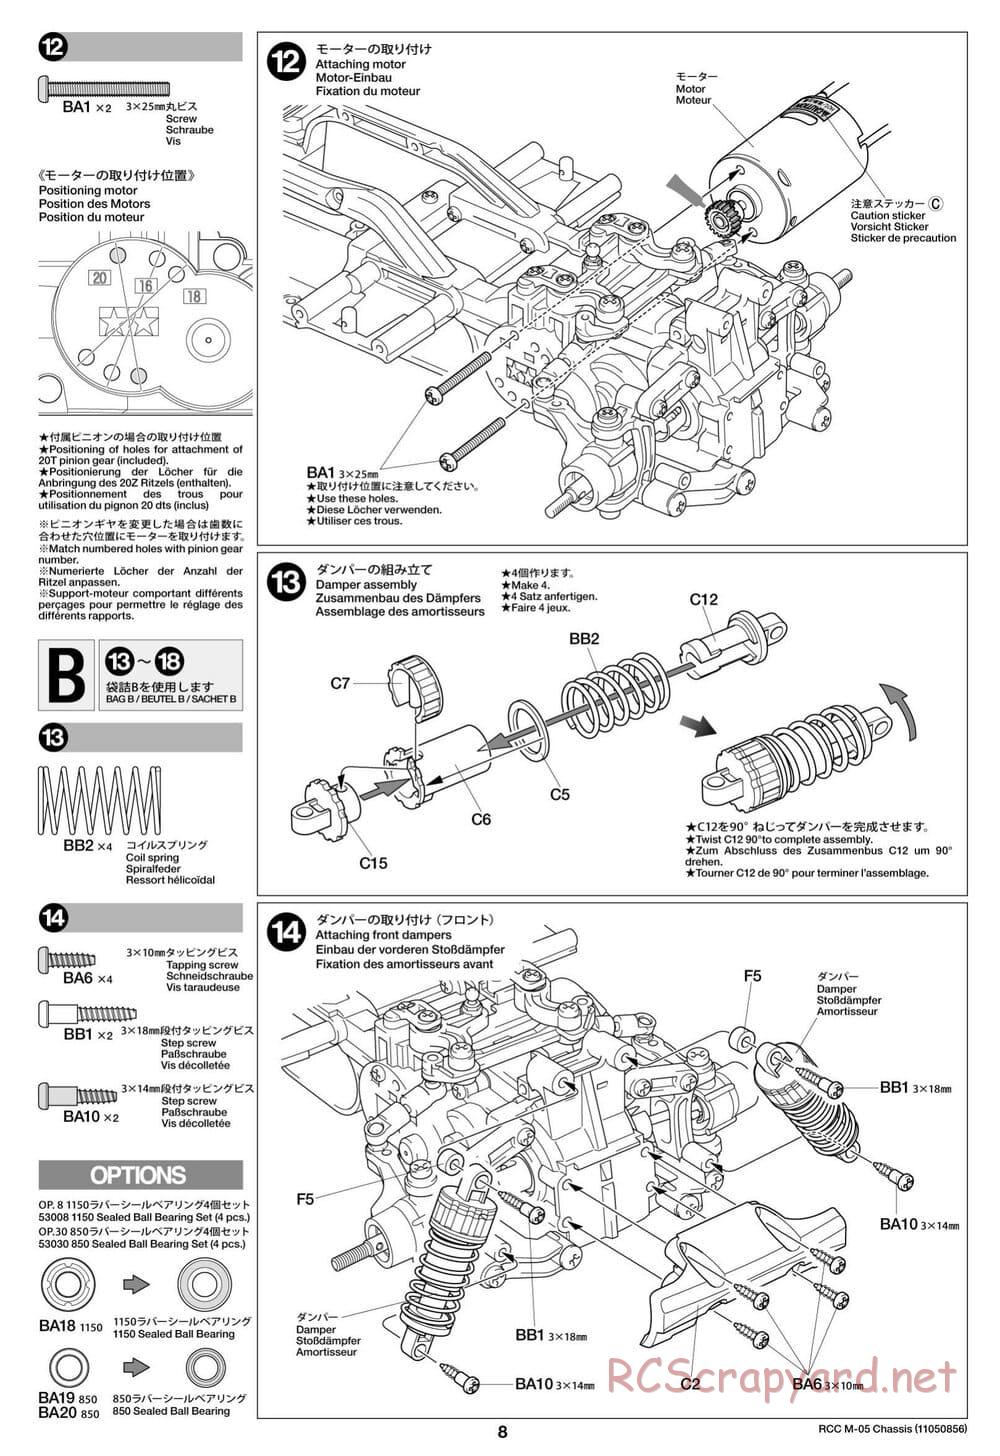 Tamiya - M-05 Chassis - Manual - Page 8